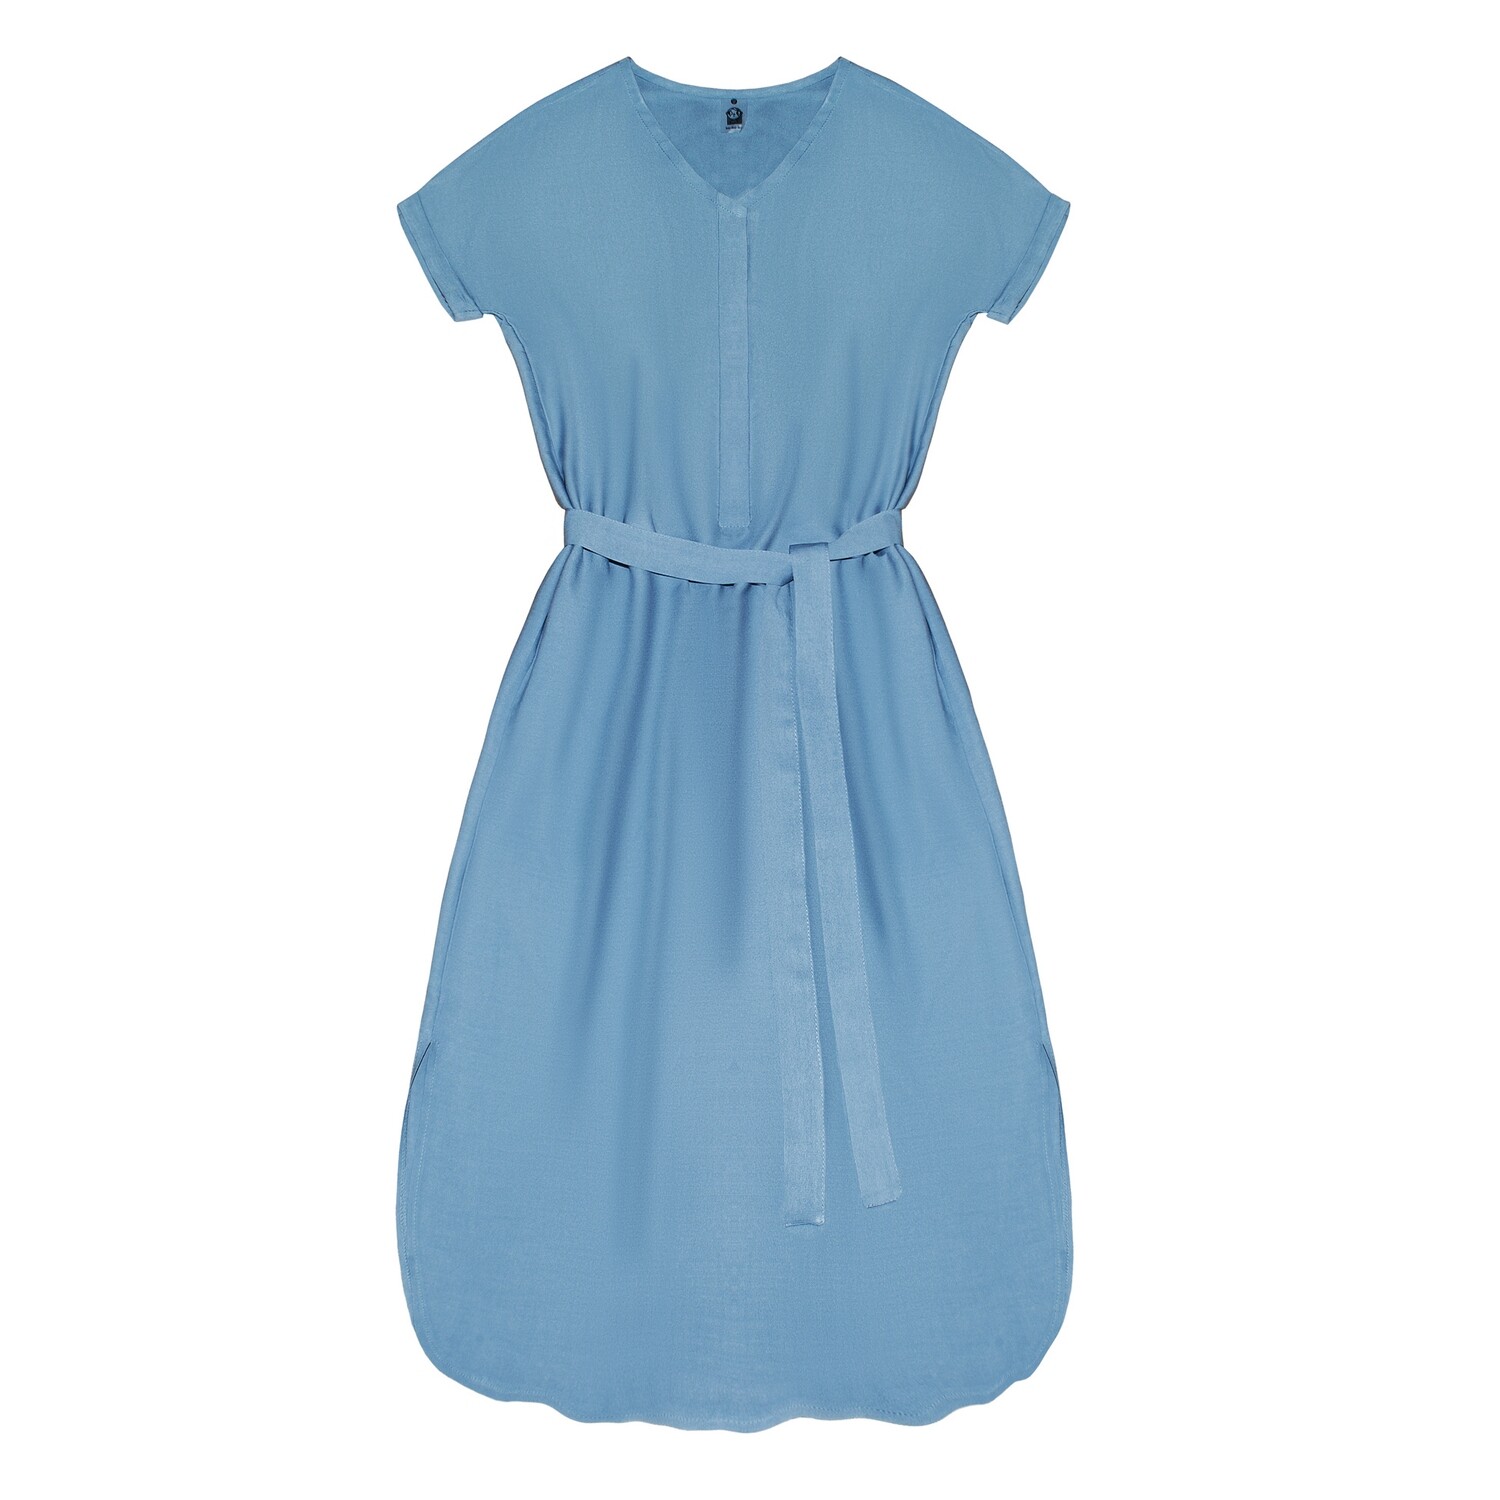 Взрослое платье с поясом голубое